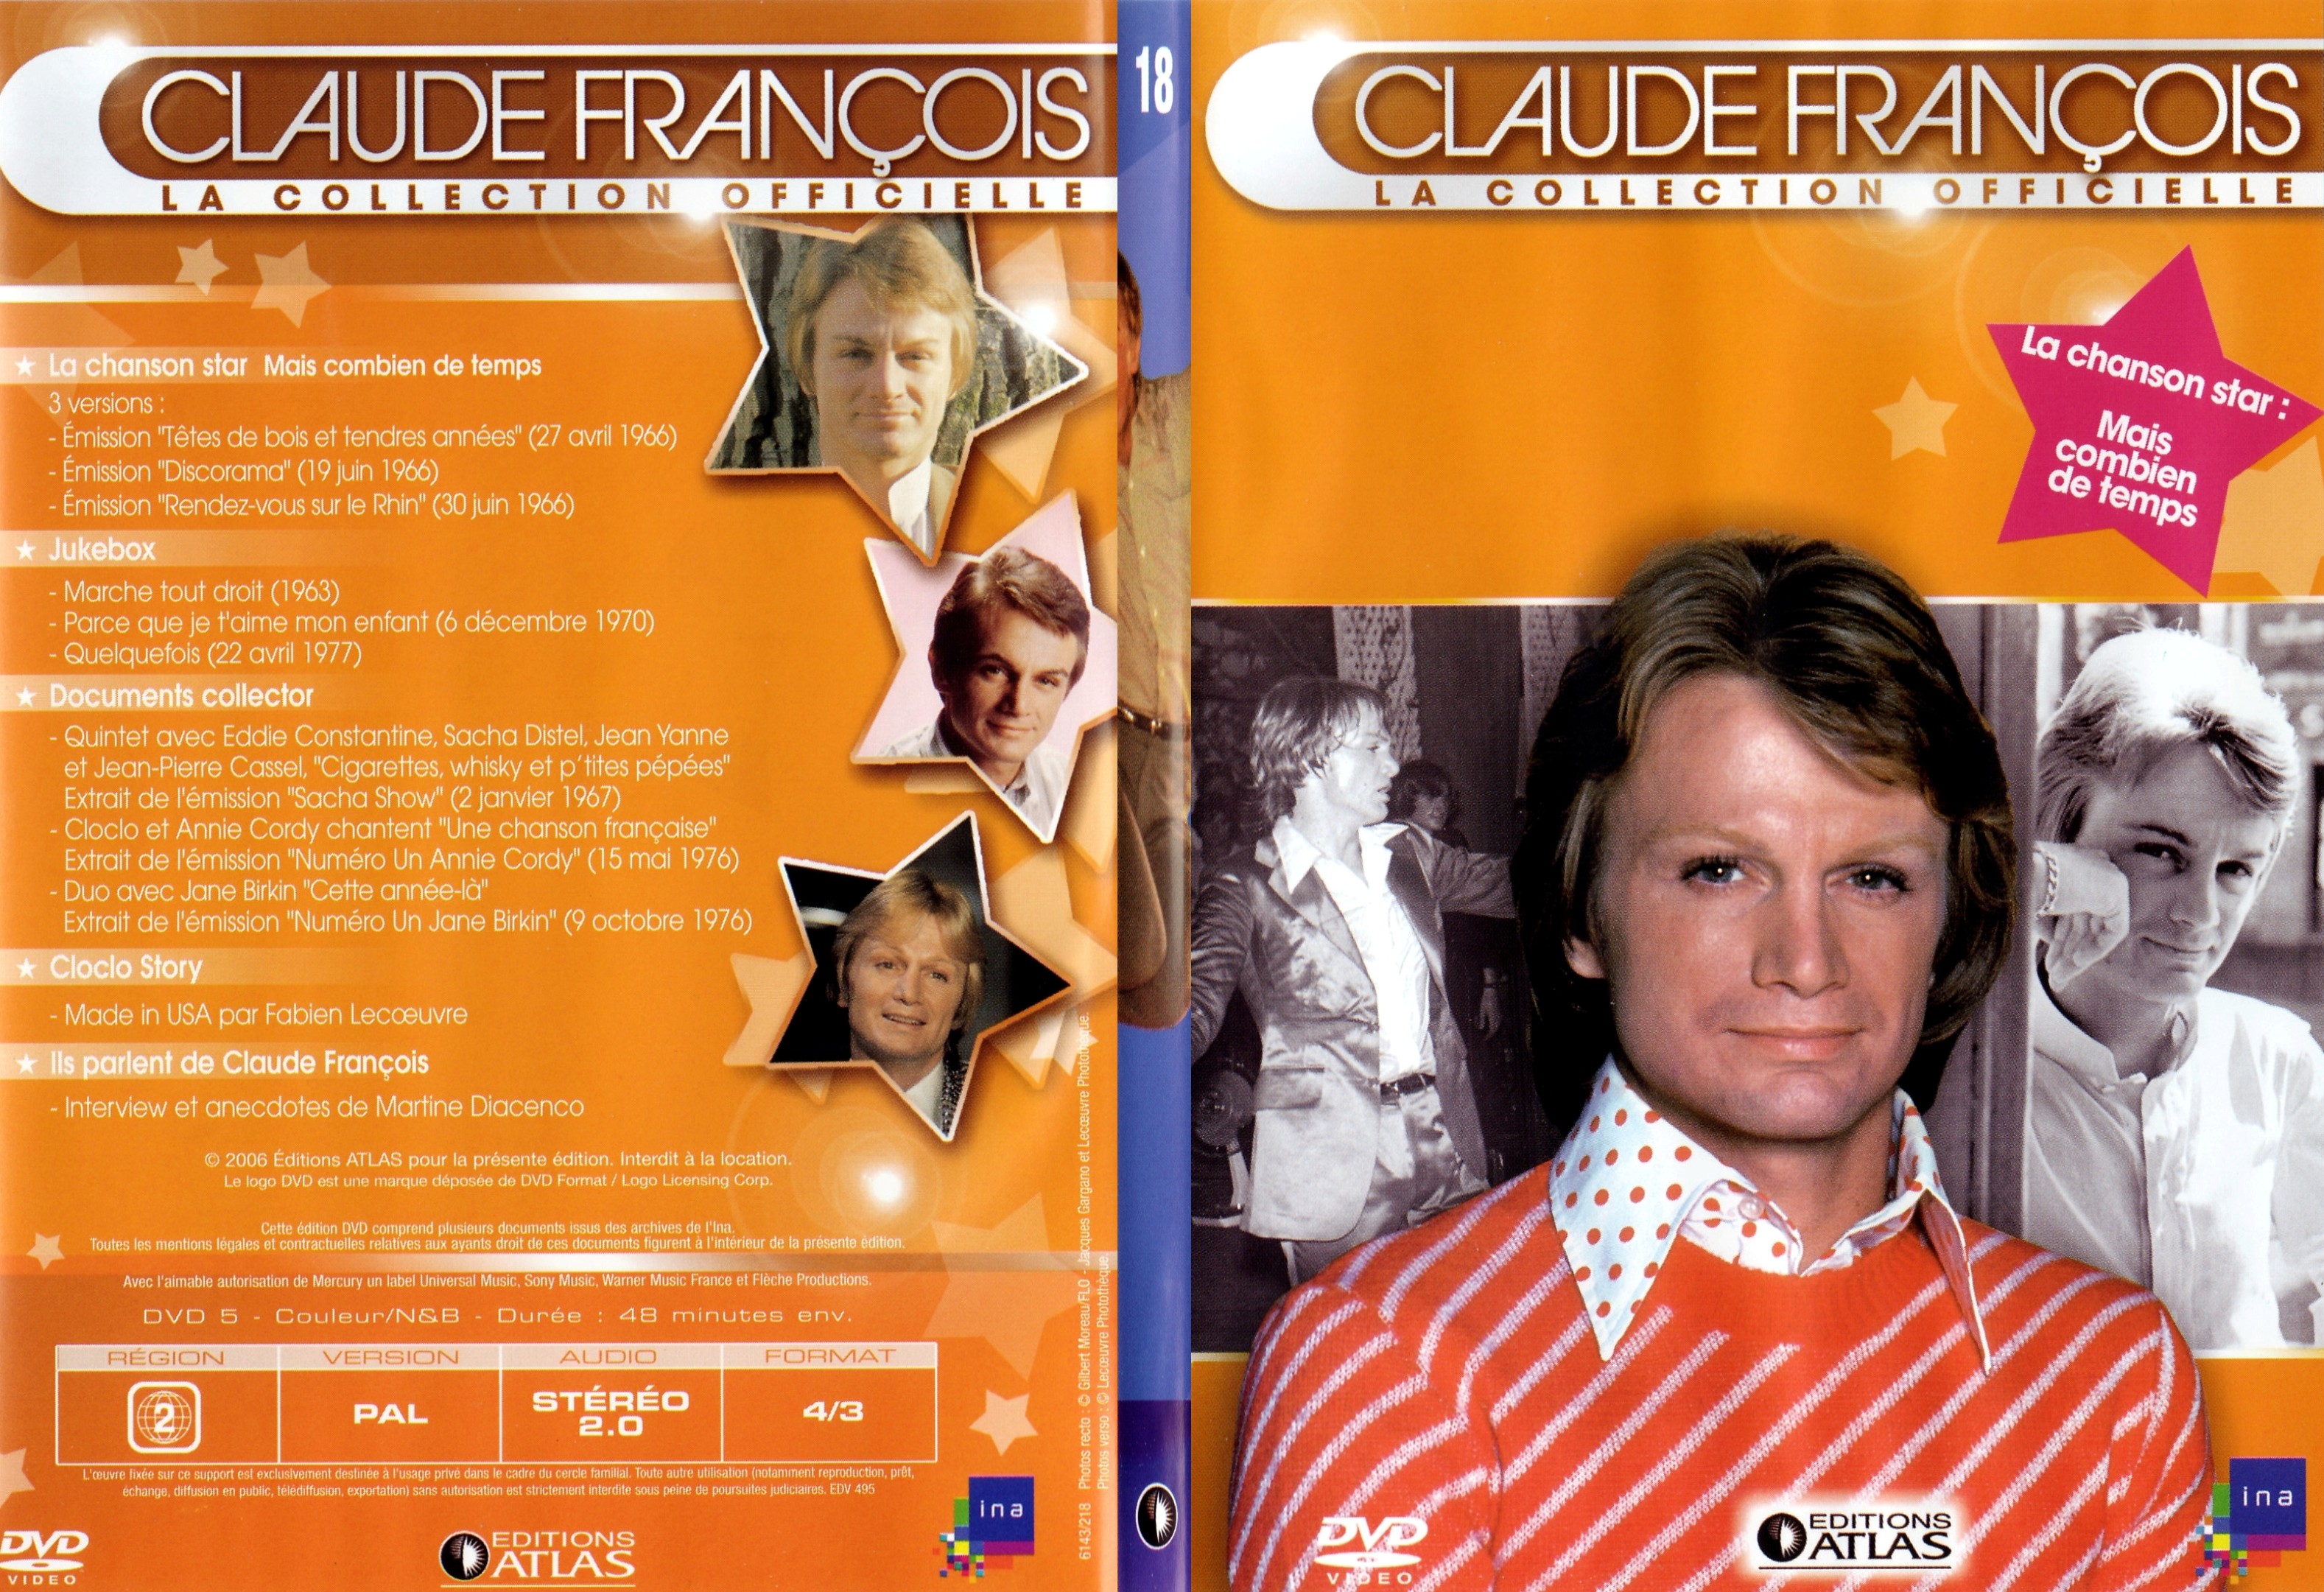 Jaquette DVD Claude francois le collection officielle vol 18 - SLIM